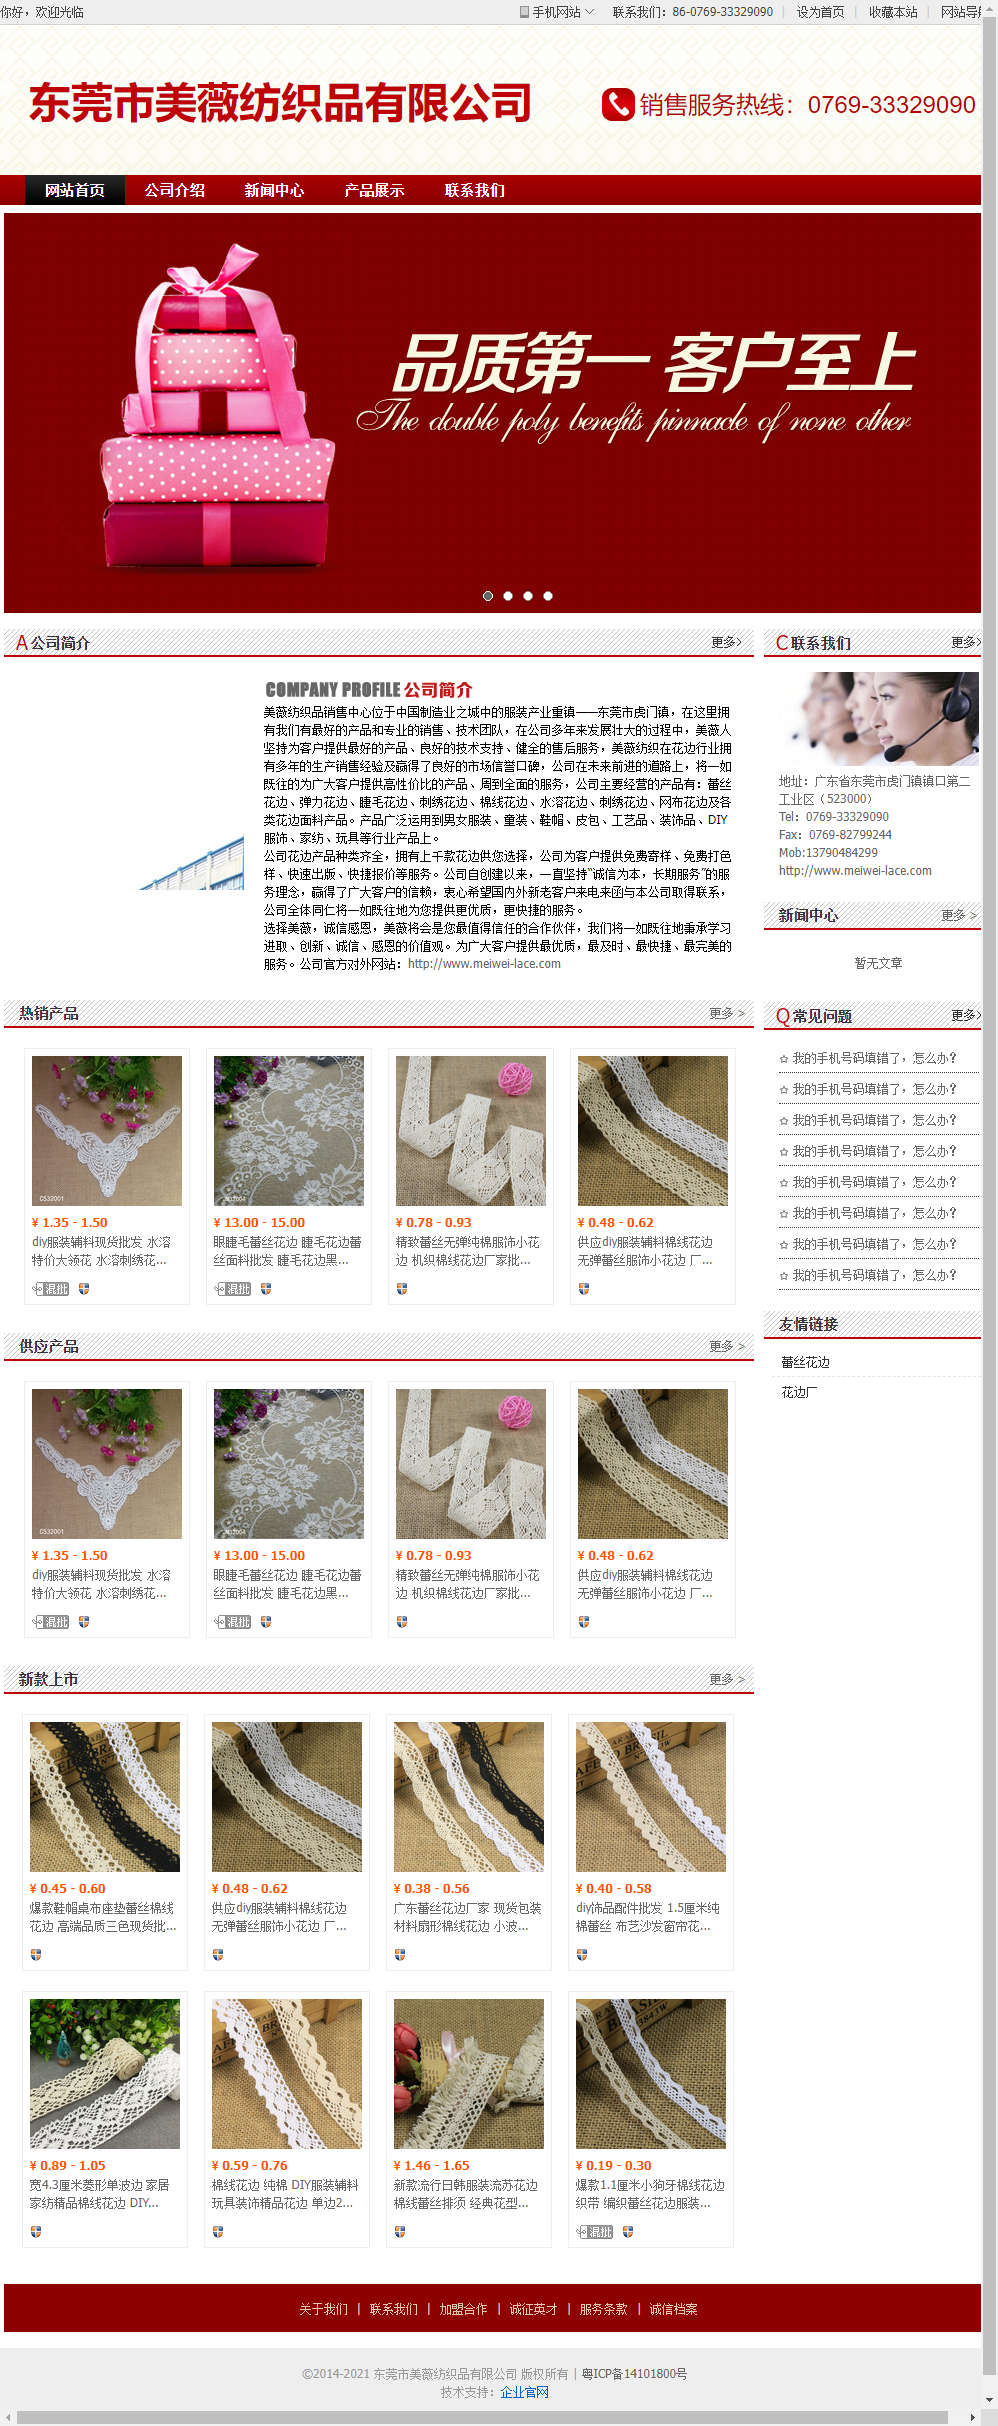 东莞市美薇纺织品有限公司网站案例